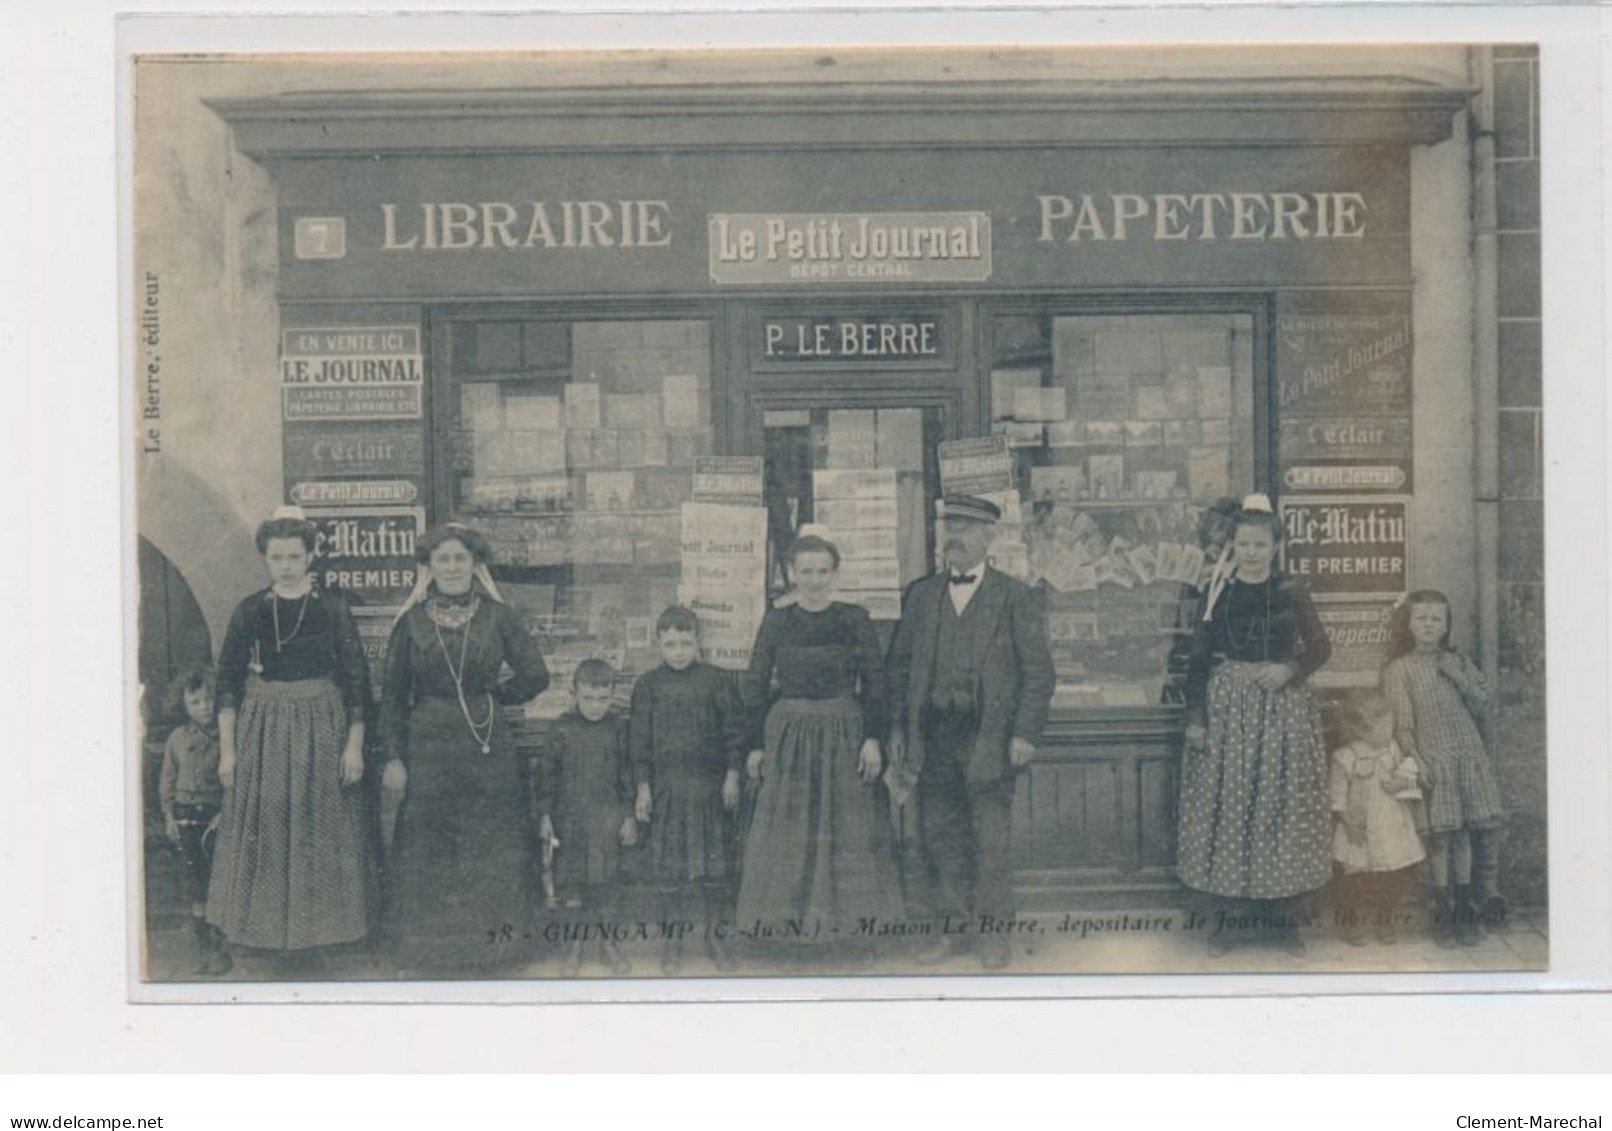 GUINGAMP - Maison Le Berre, Dépositaire De Journaux, Librairie - Très Bon état - Guingamp